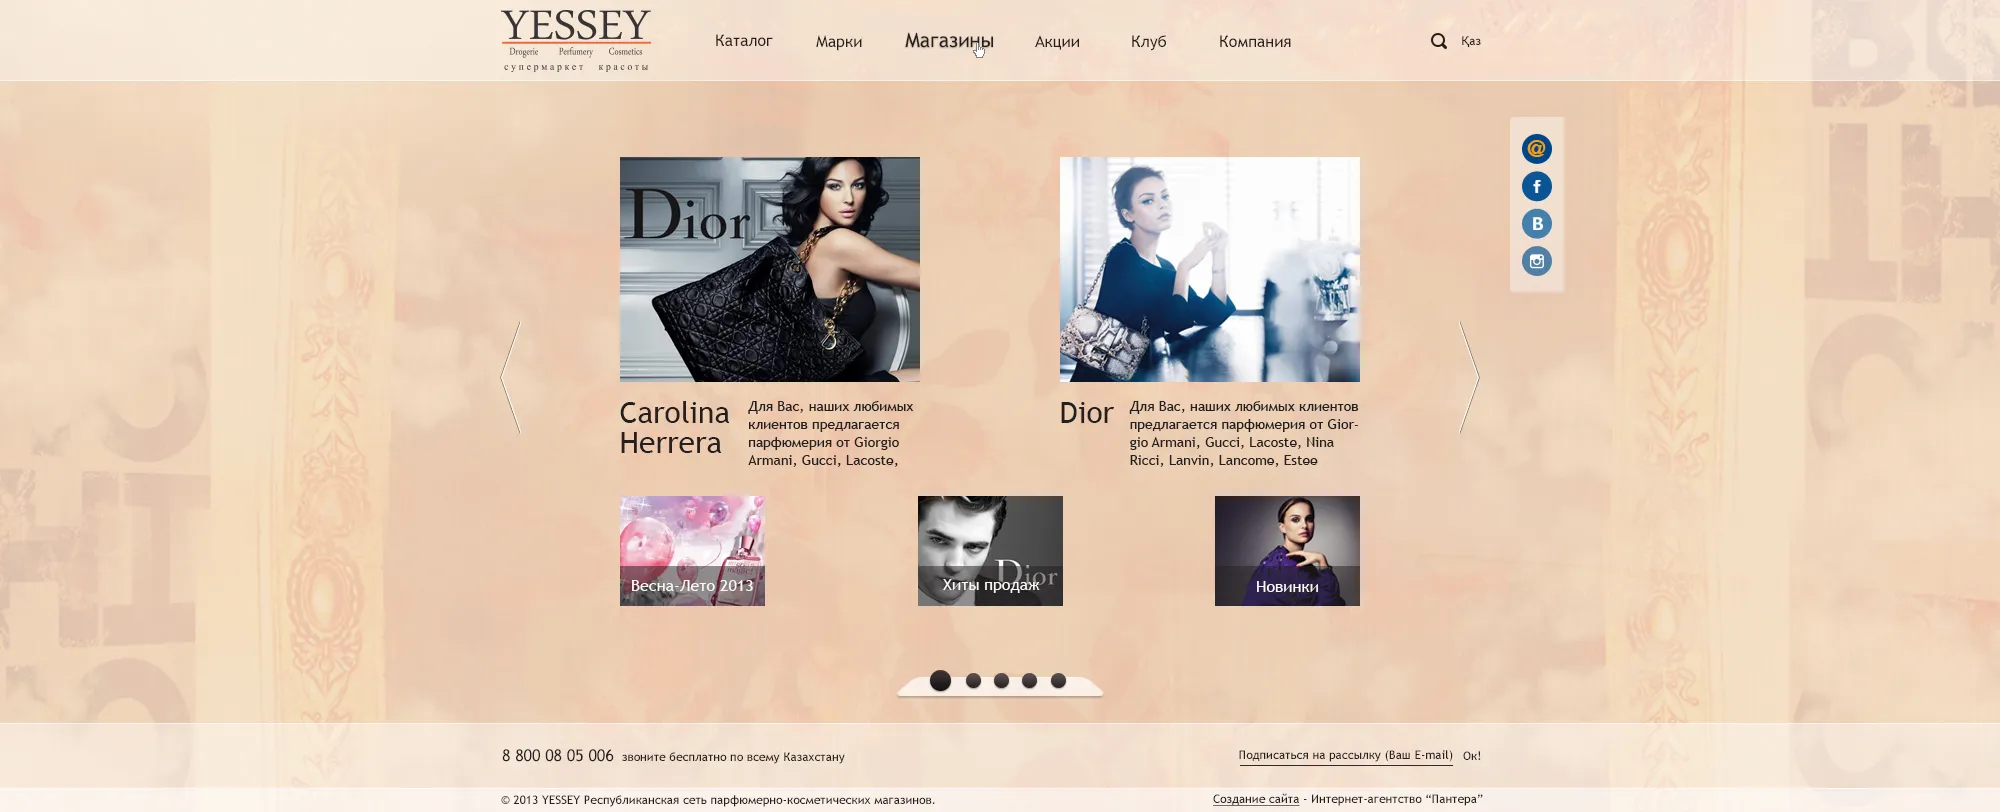 Создание корпоративного сайта для сети магазинов YESSEY